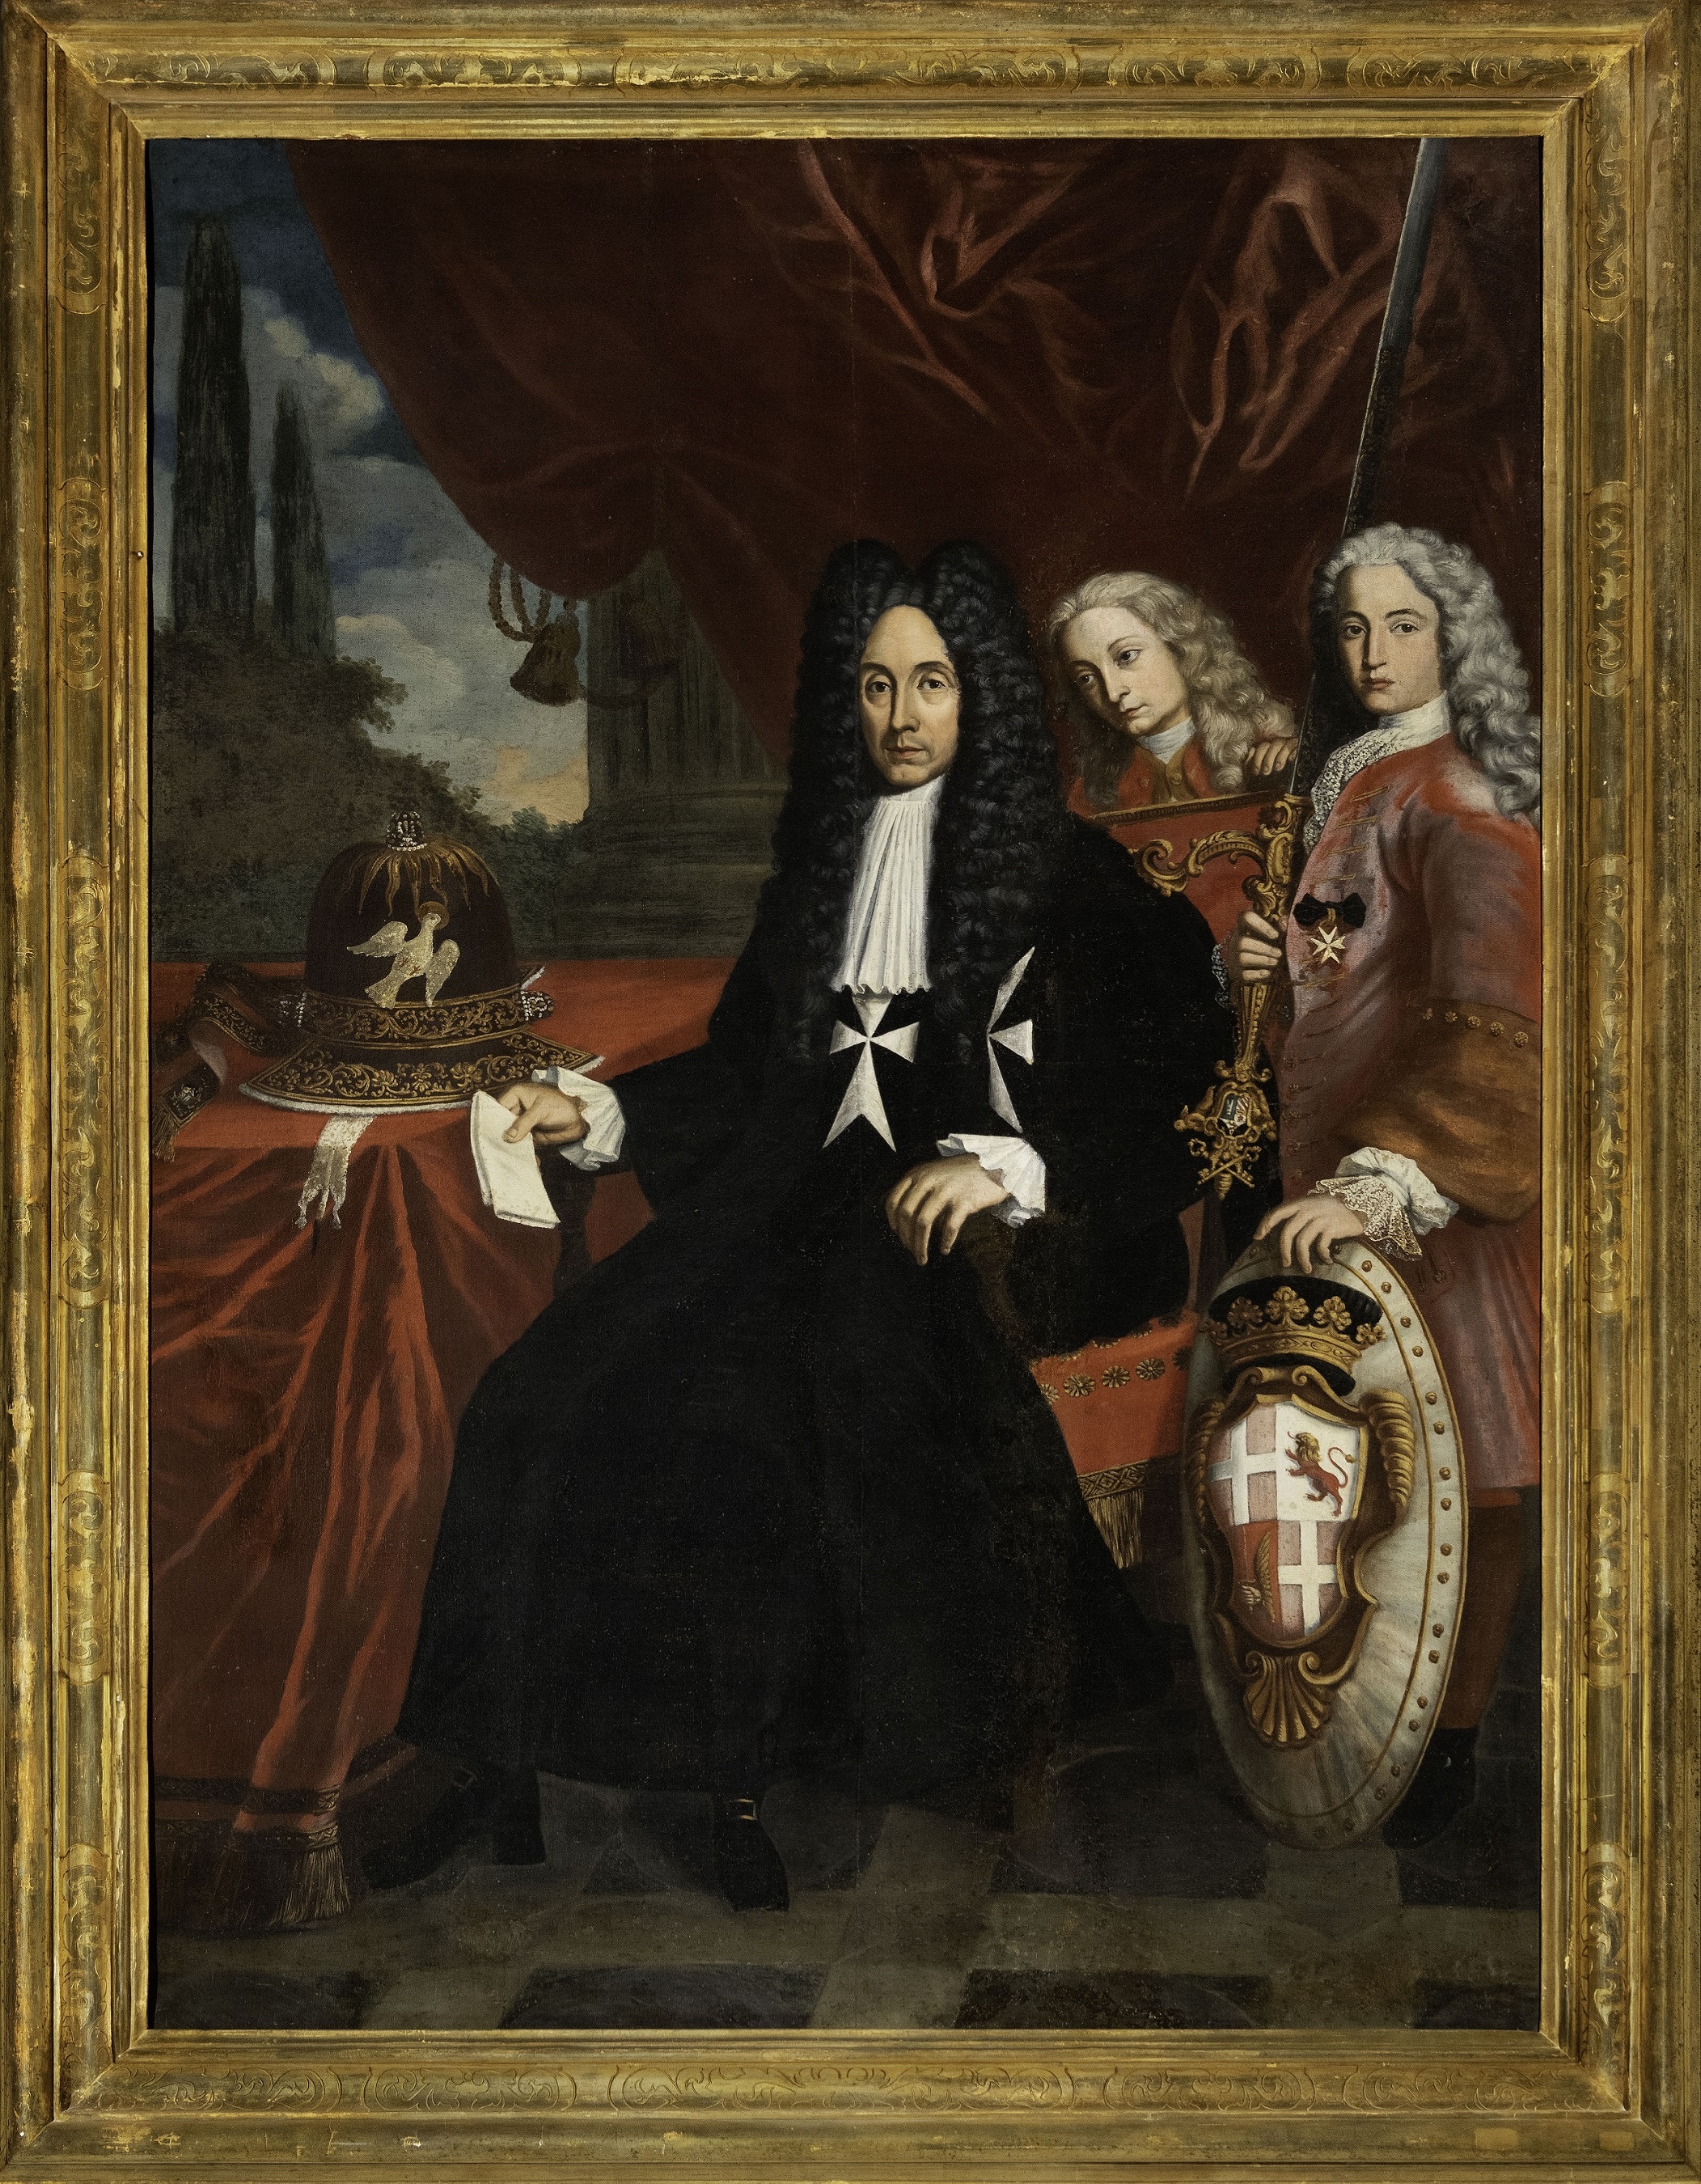 Imagen de: "Retrato del Gran Maestre Antonio Manoel de Vilhena con pajes". Patrimonio Malta-Palacio del Gran Maestre.
